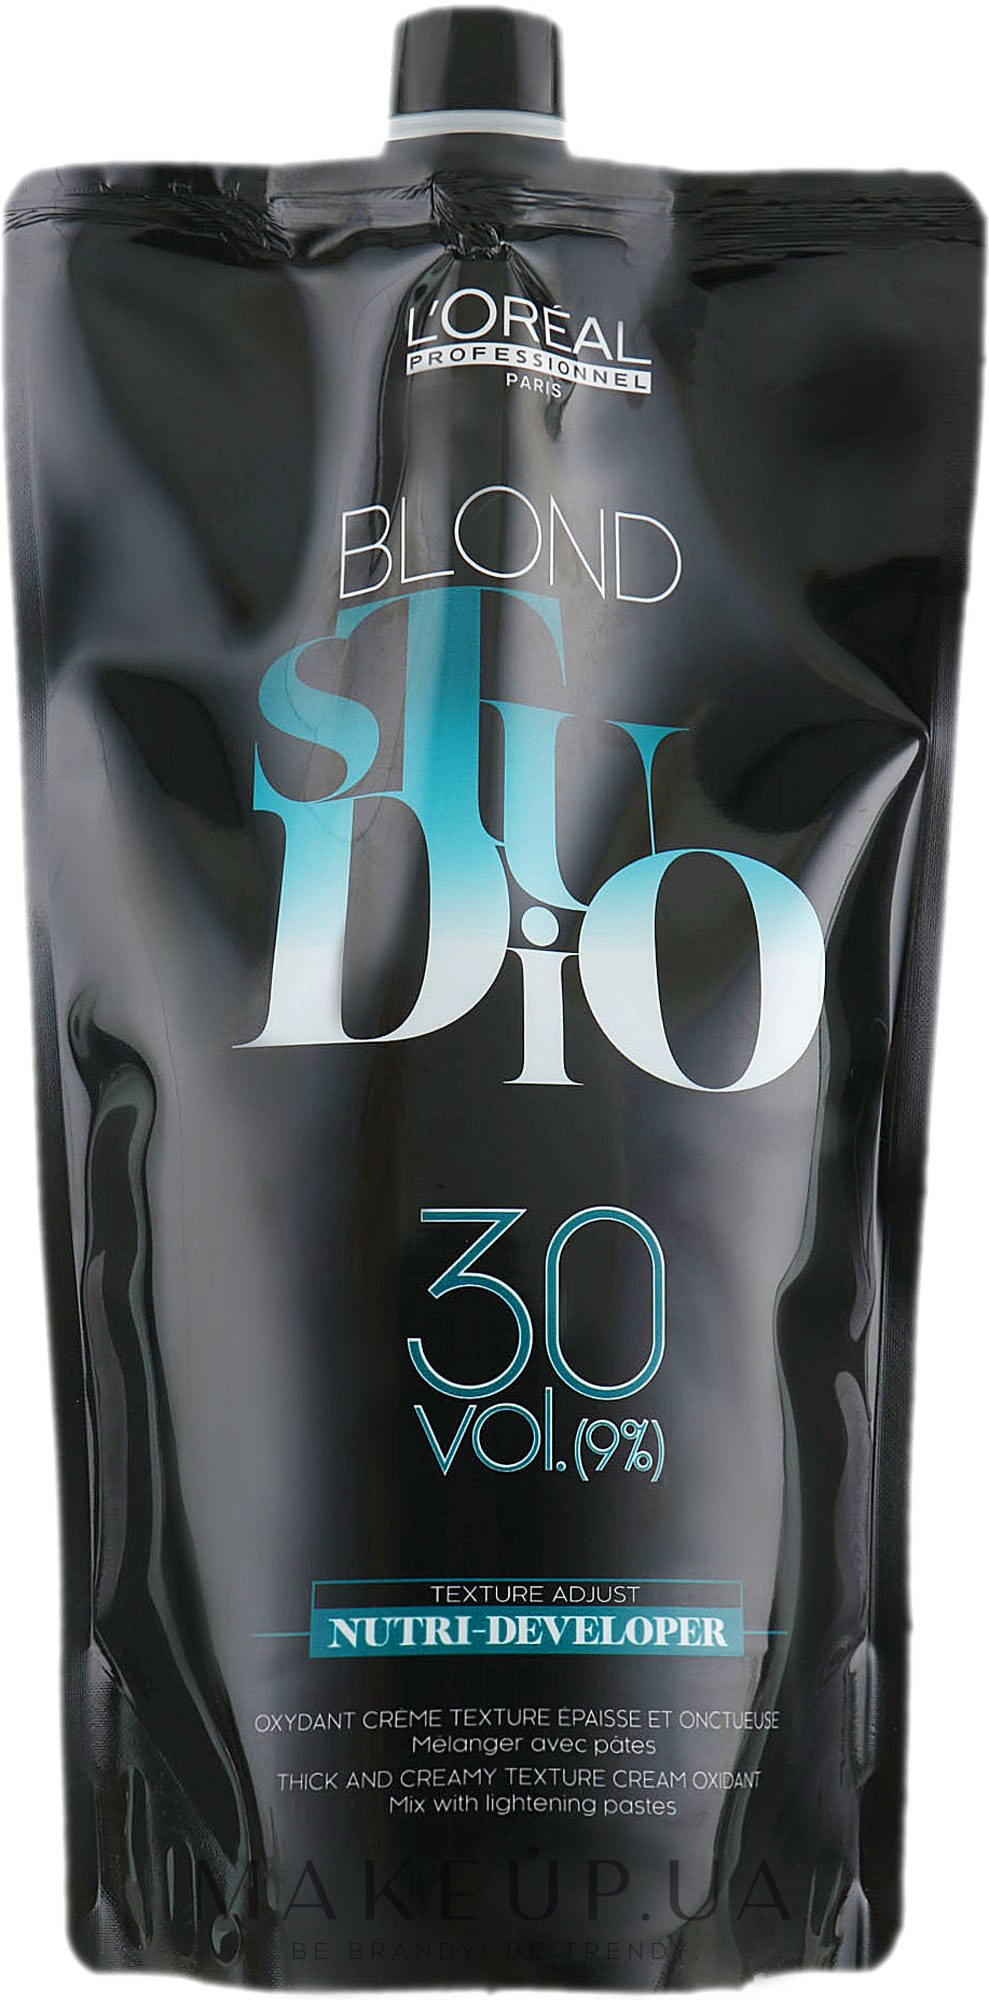 Питательный кремовый проявитель для осветленных волос 9% - L'Oreal Professionnel Blond Studio Creamy Nutri-Developer Vol.30 — фото 1000ml